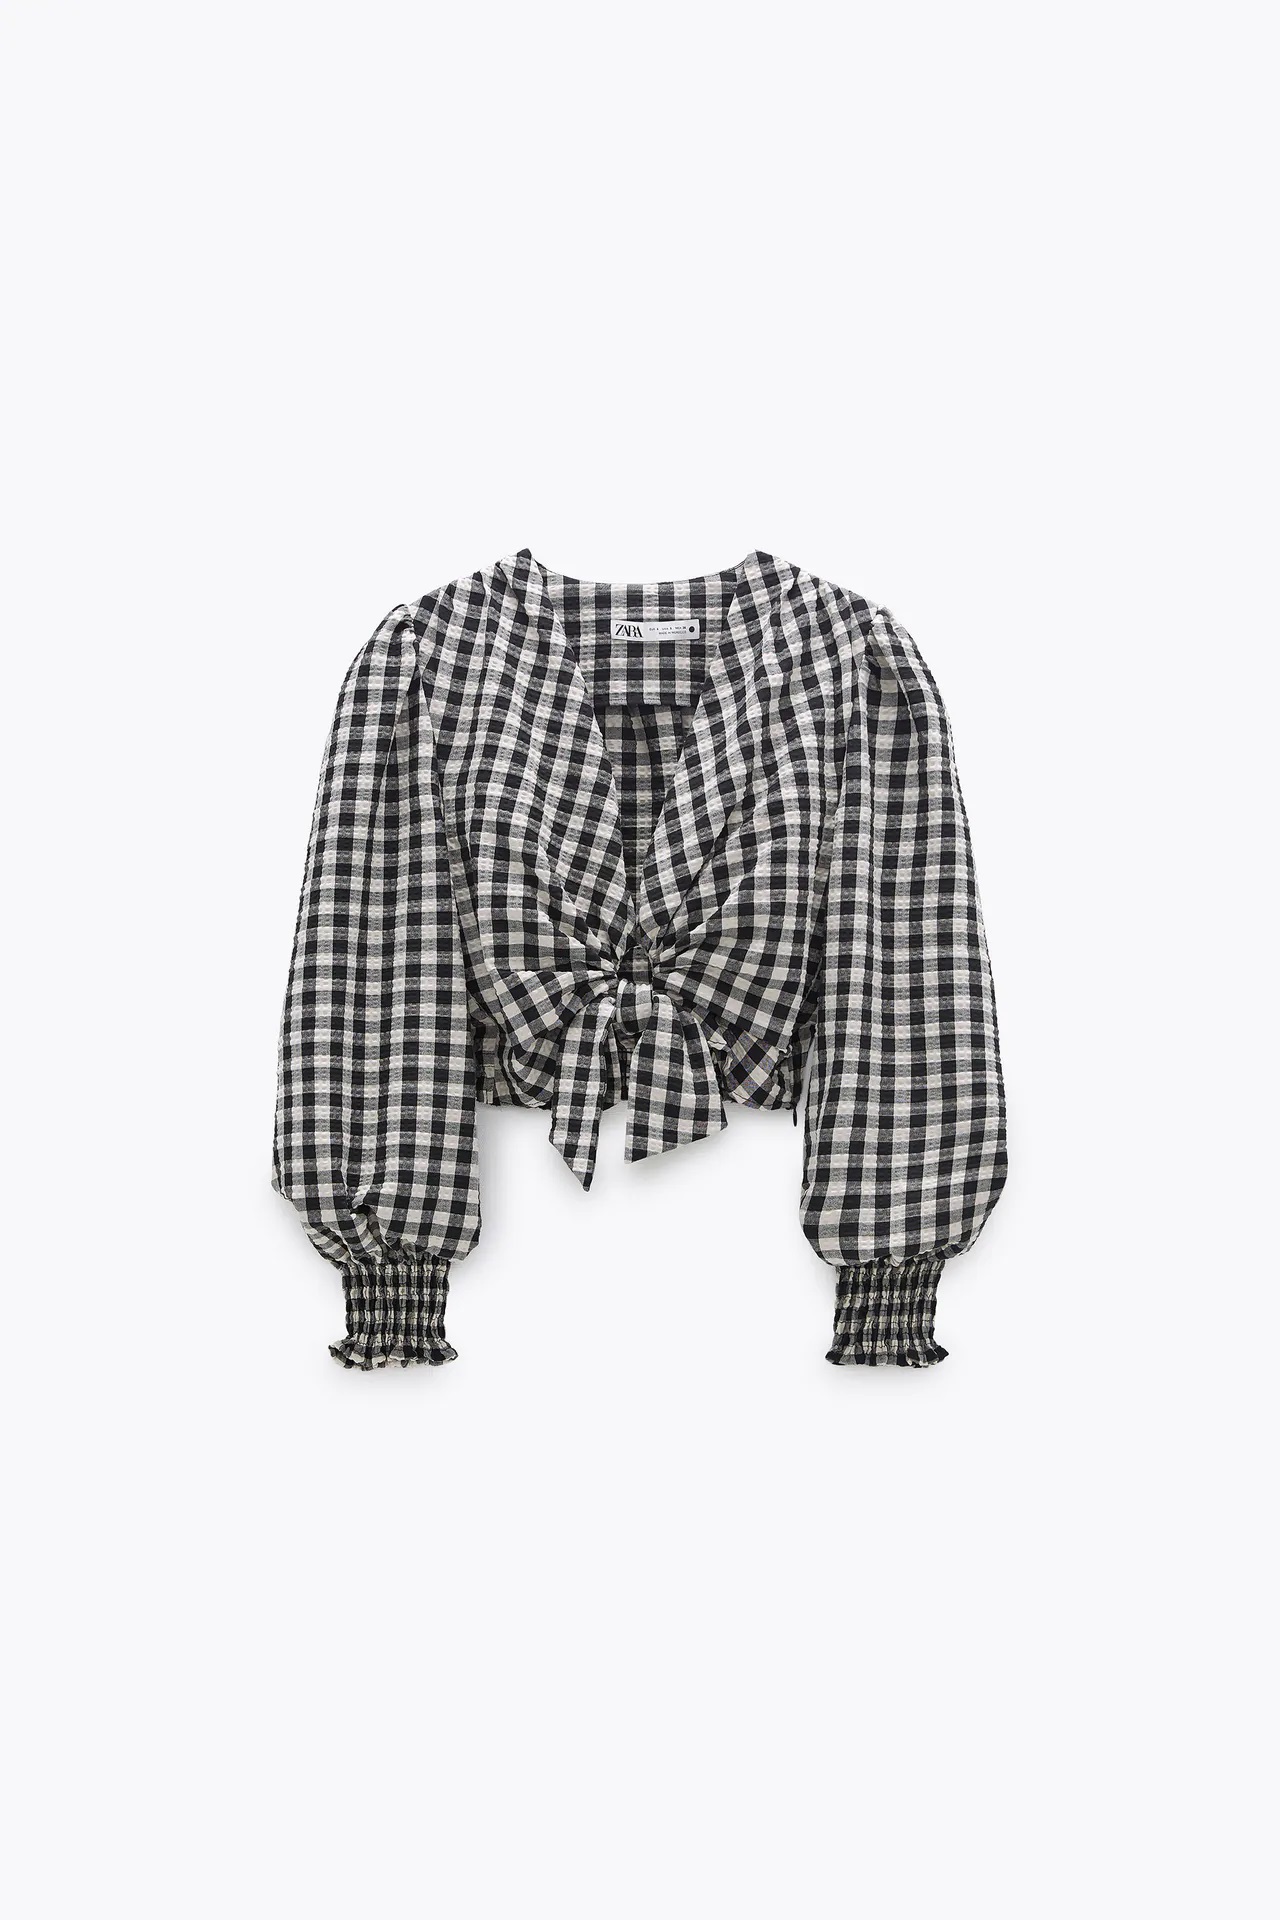 Zara: Amelia Bono se apunta a la moda cuadros esta blusa